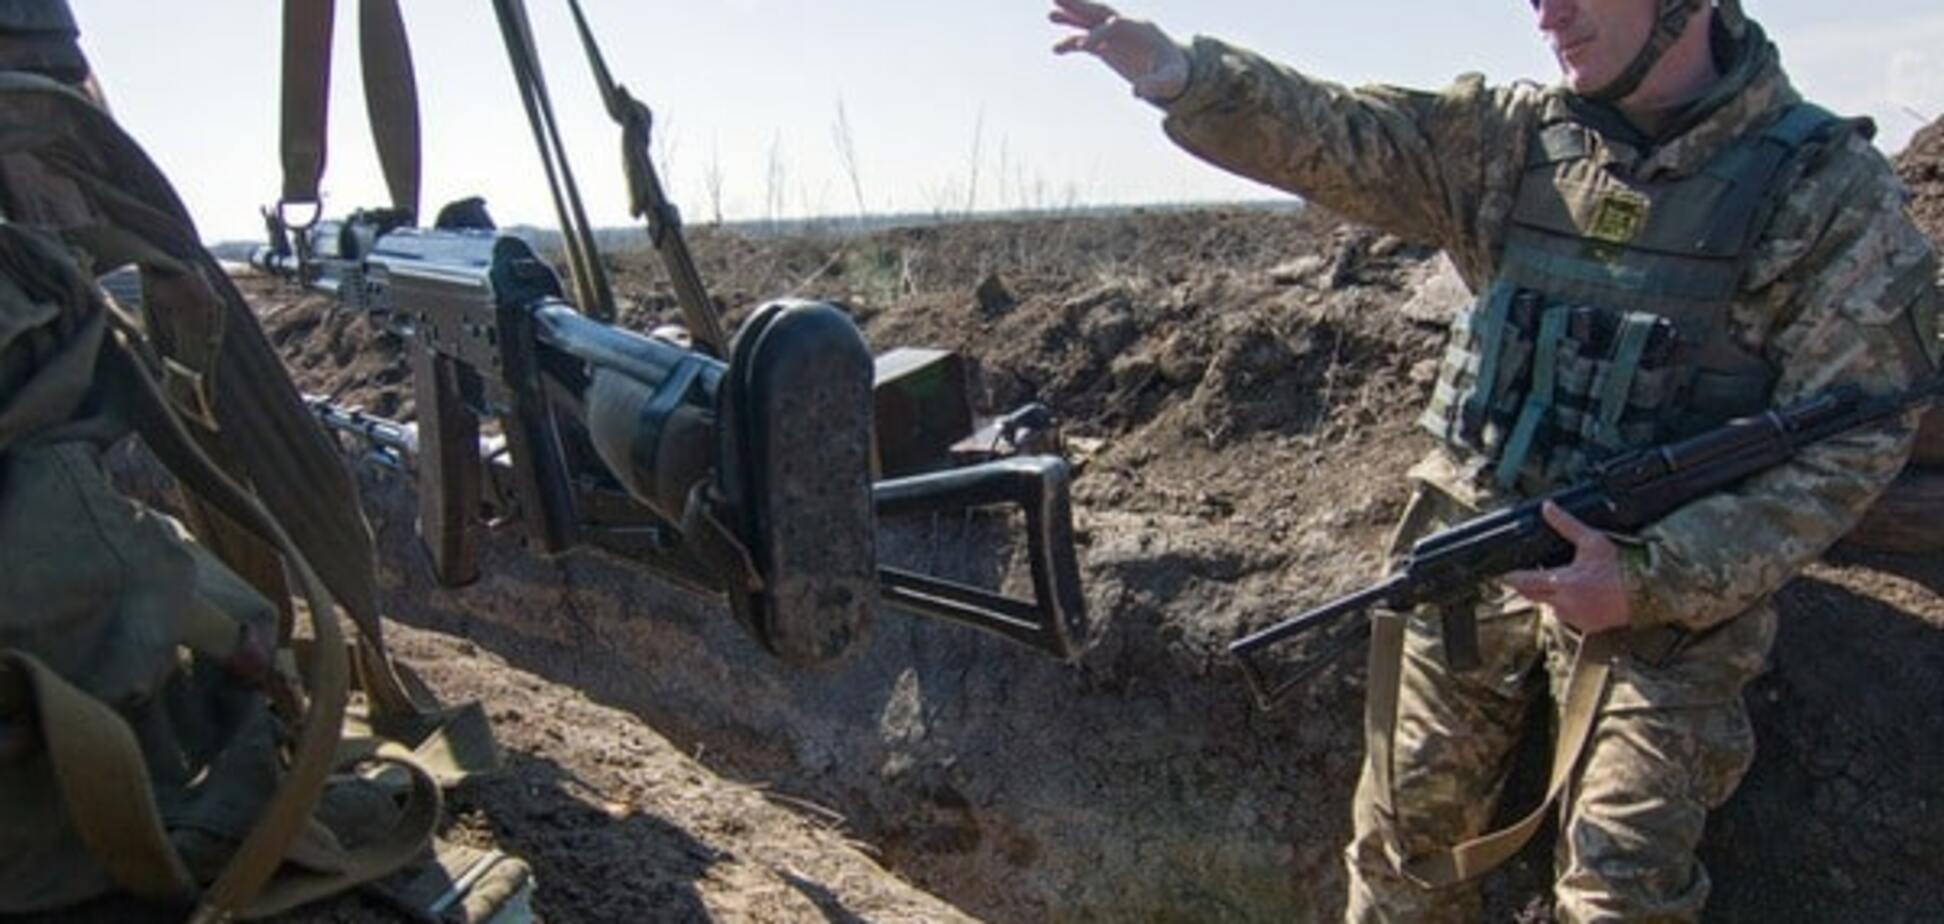 Теоретично можливо: військовий експерт назвав дві умови силового звільнення Донбасу